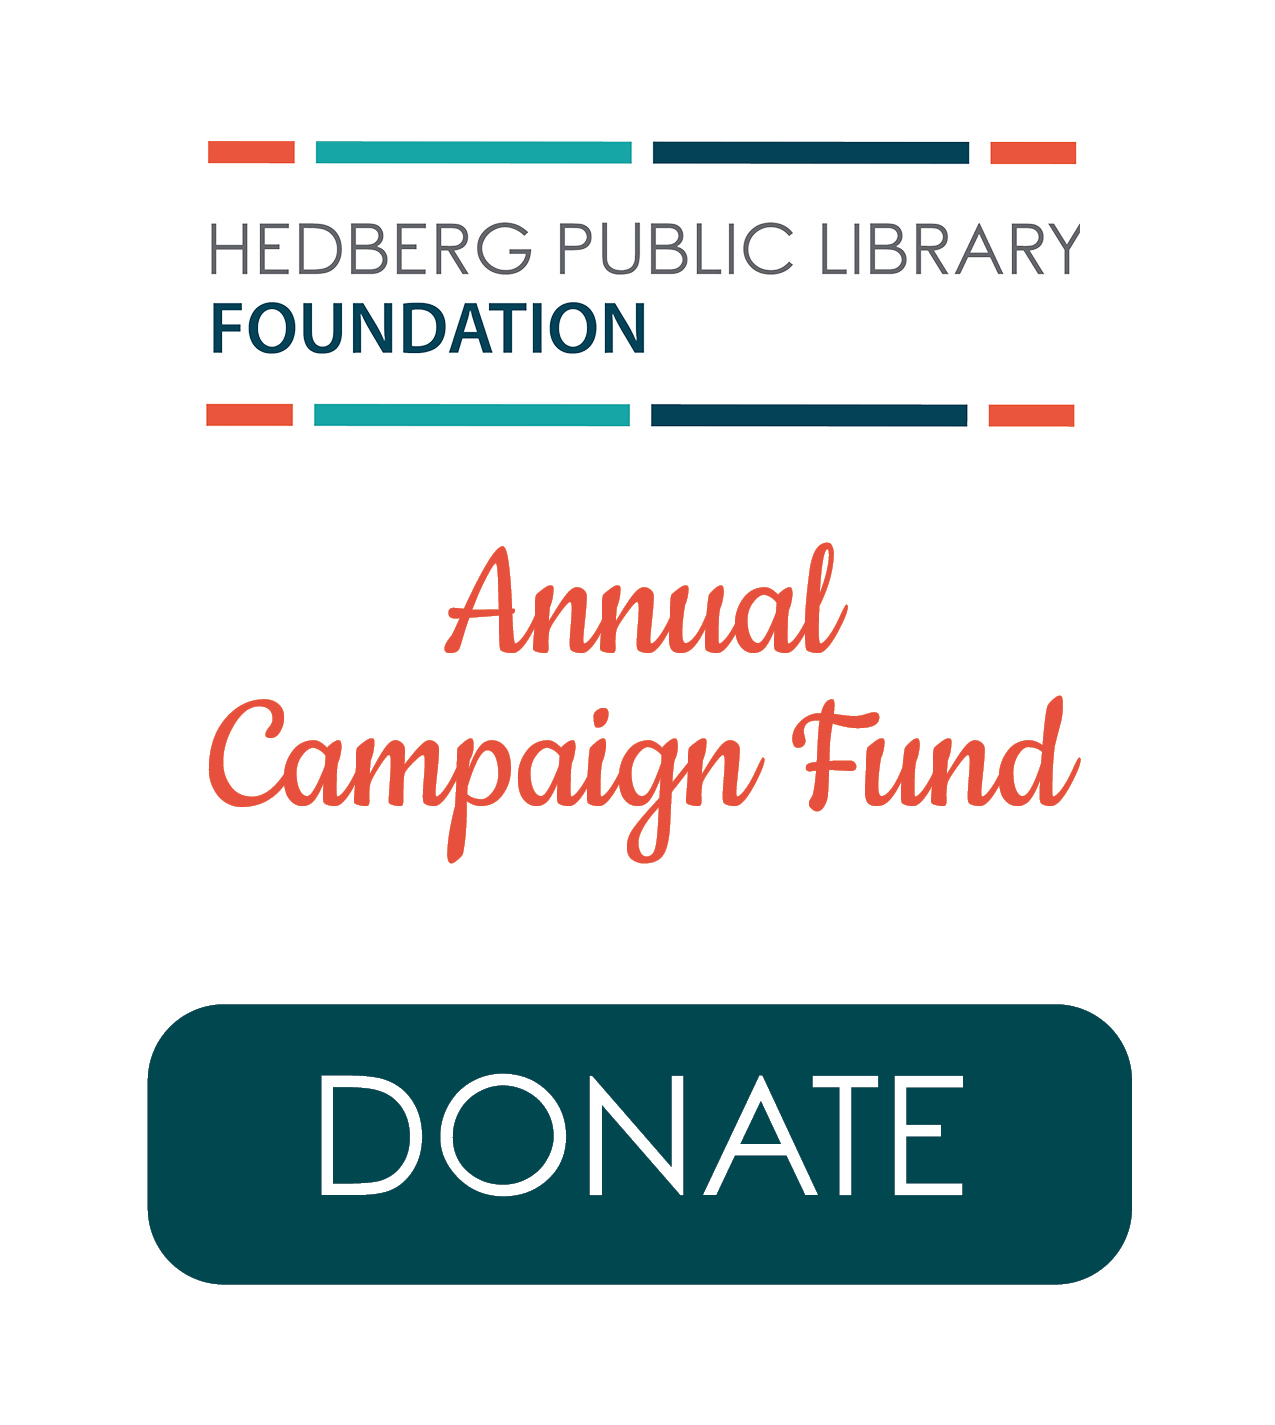 Annual Campaign Fund Donate button